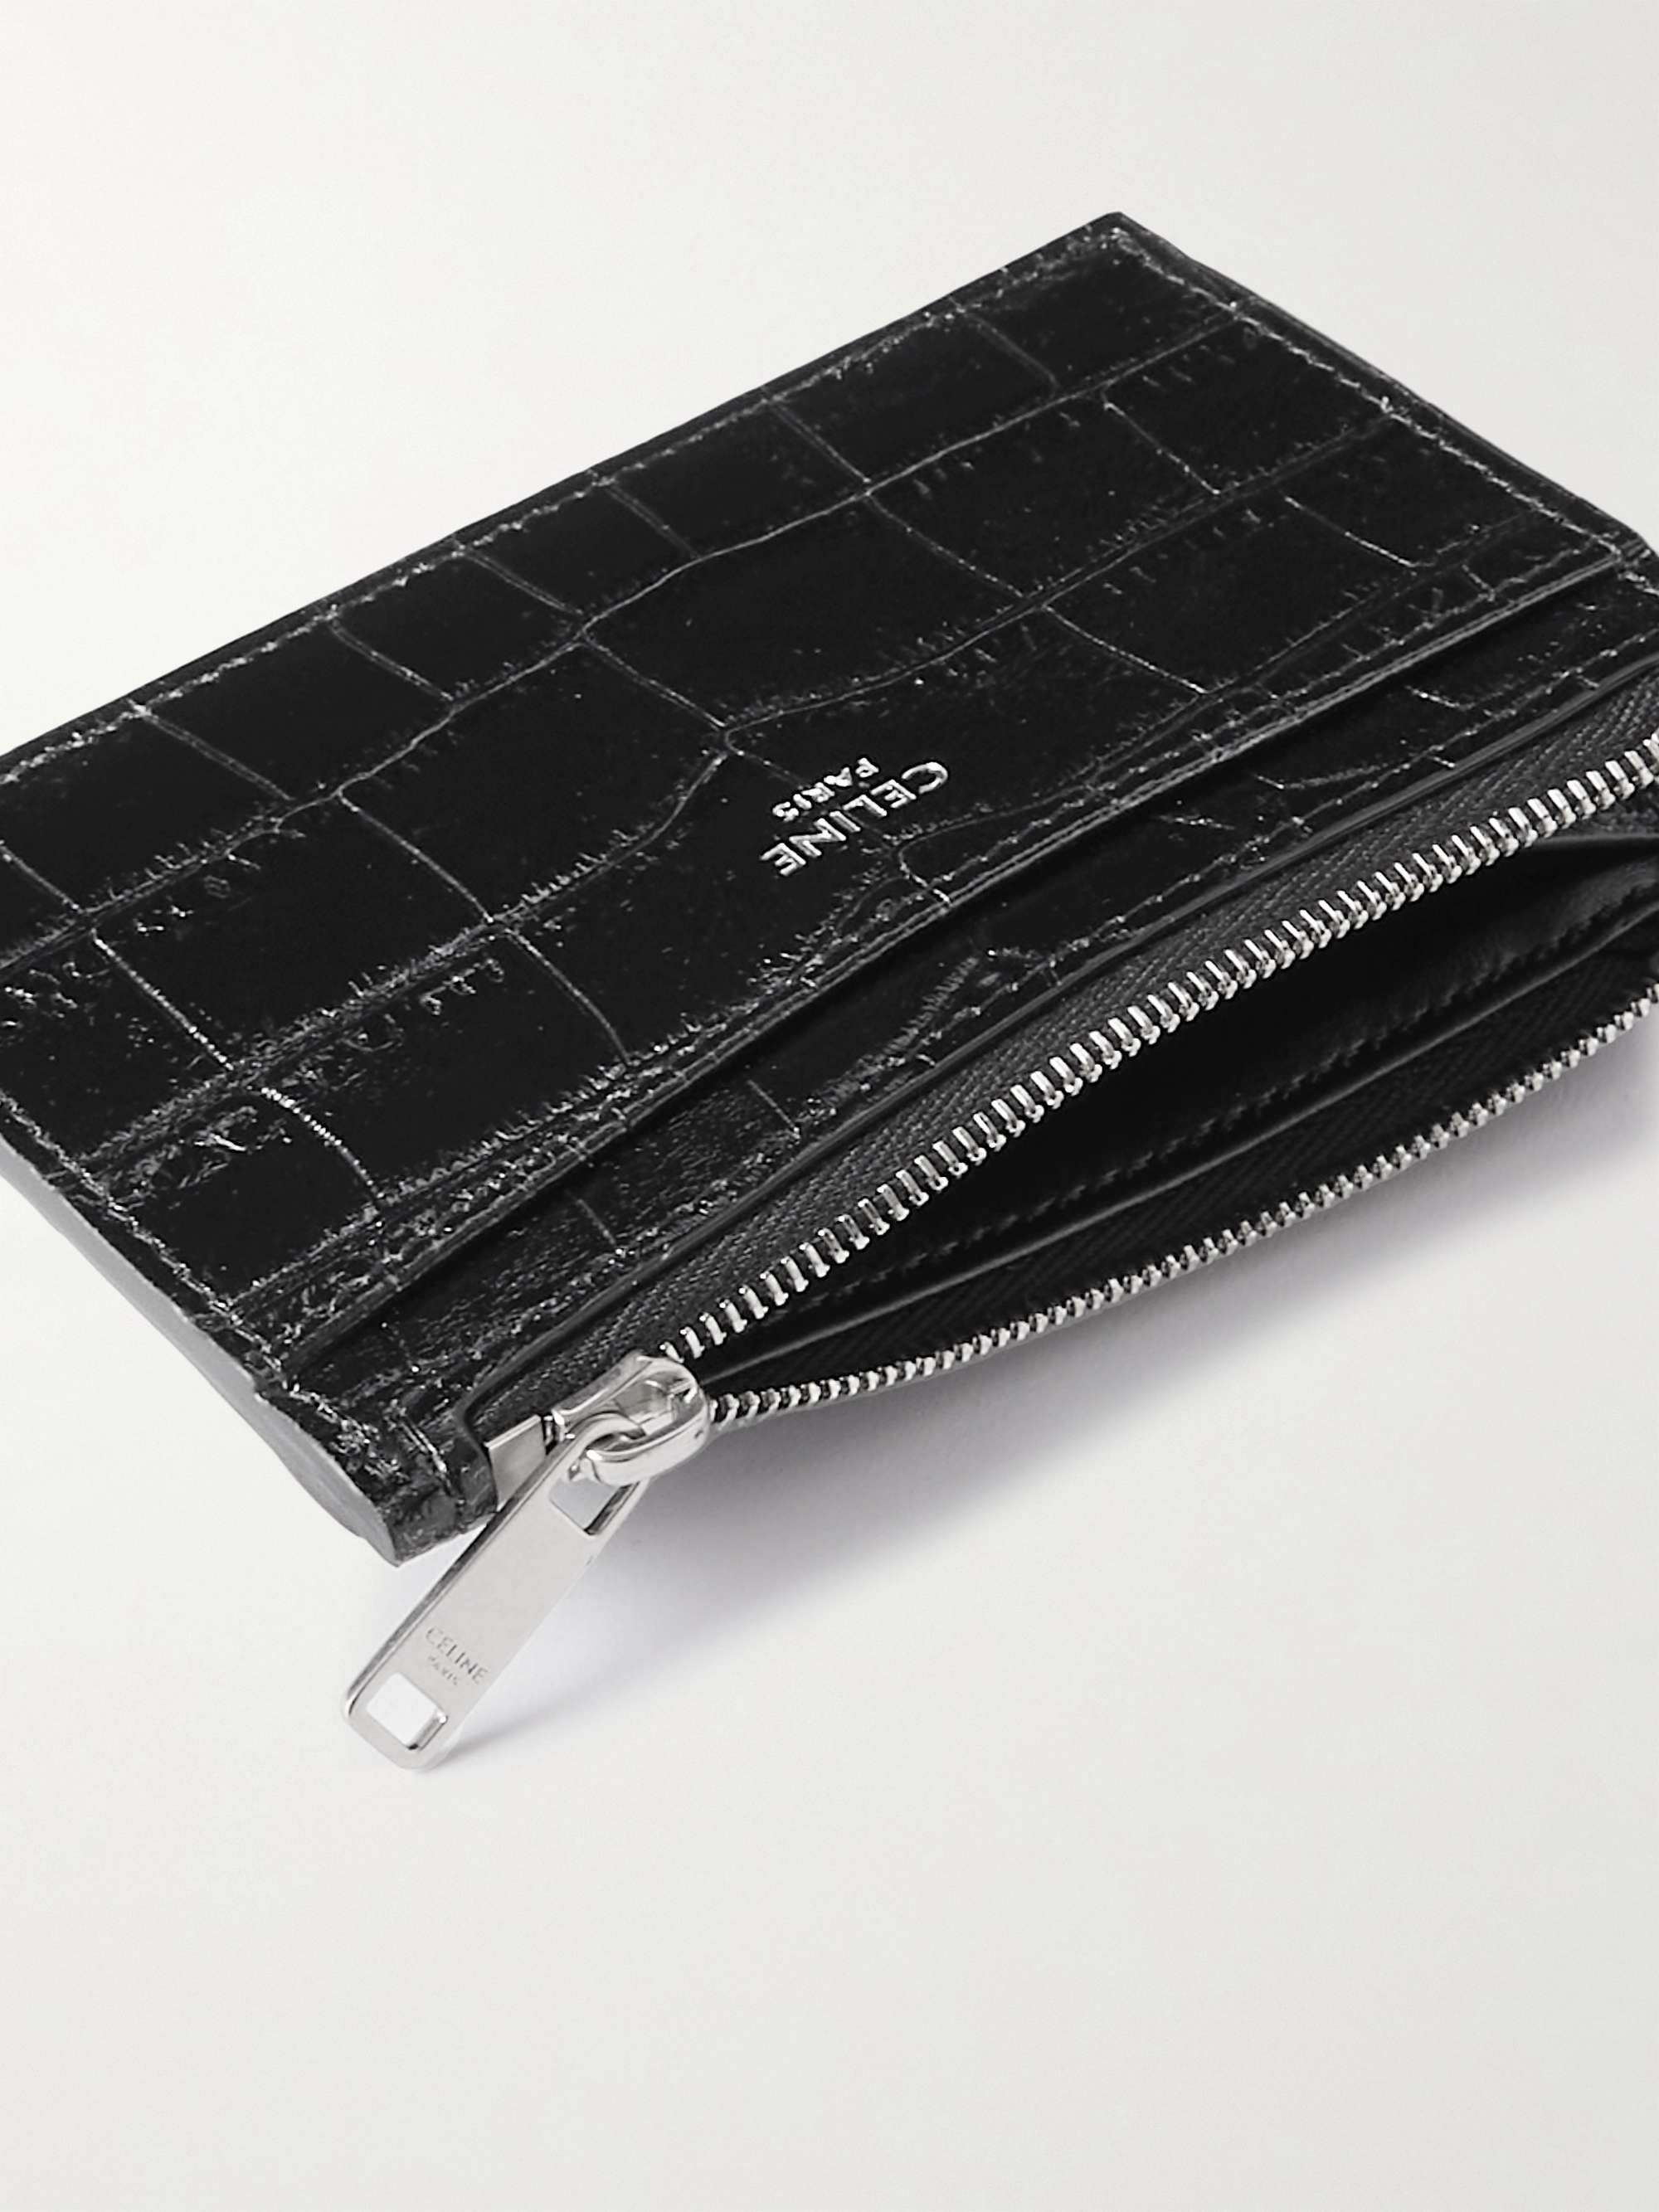 Celine Homme Croc-effect Leather Zipped Cardholder - Men - Black Wallets